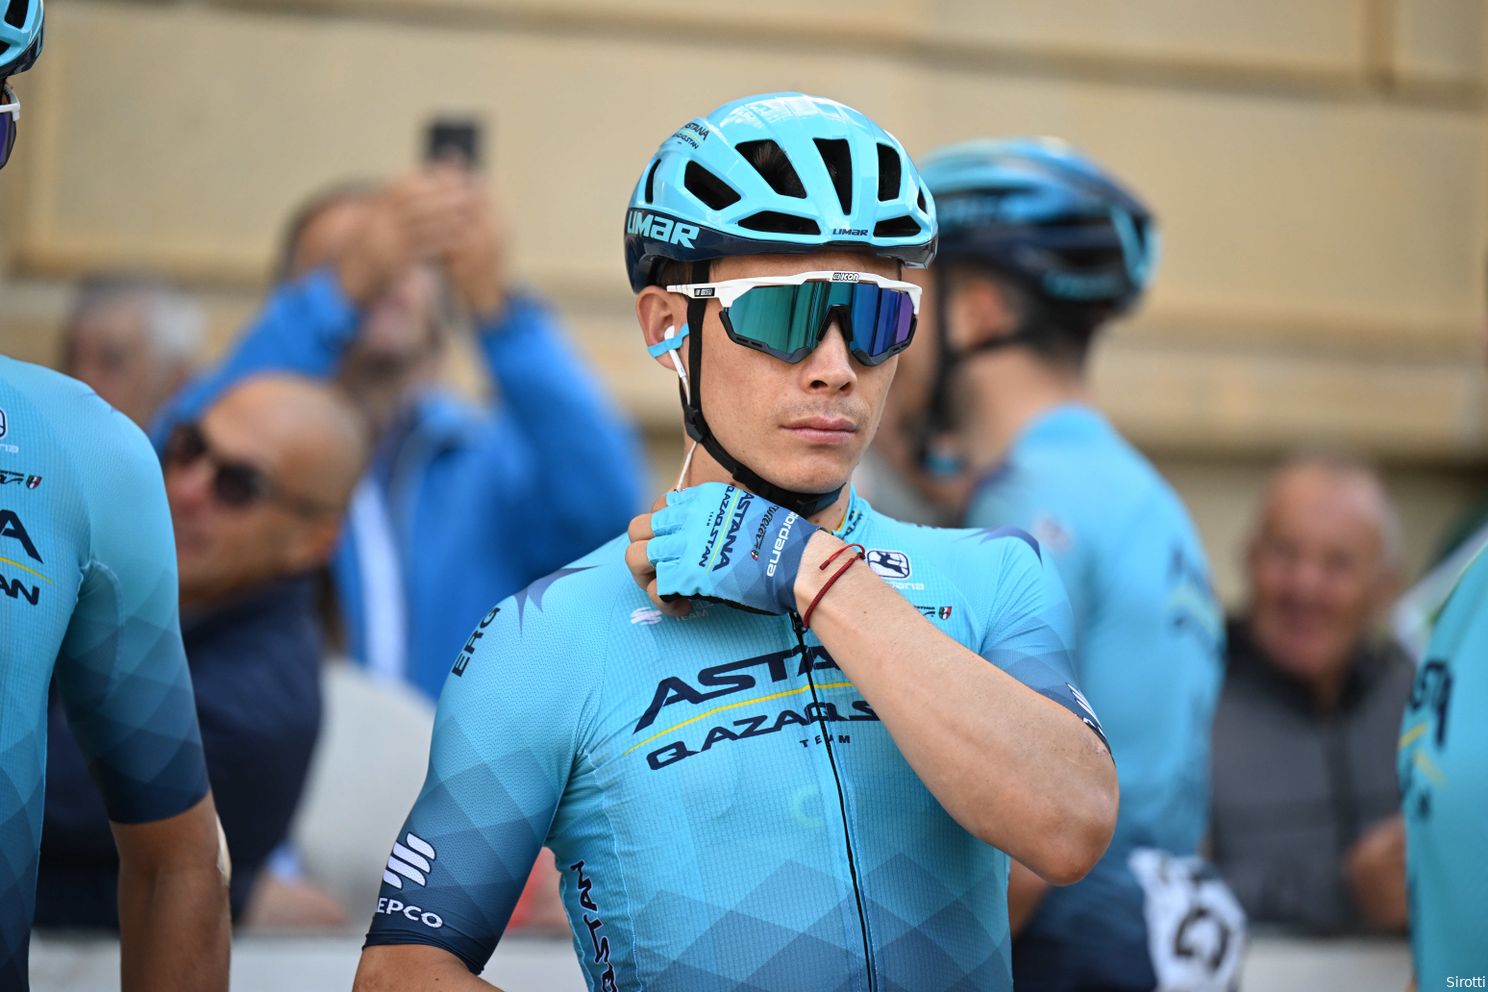 Guarda Civil voorziet UCI van bewijs in dopingzaak-López: Colombiaan krijgt vonnis van 4 jaar schorsing